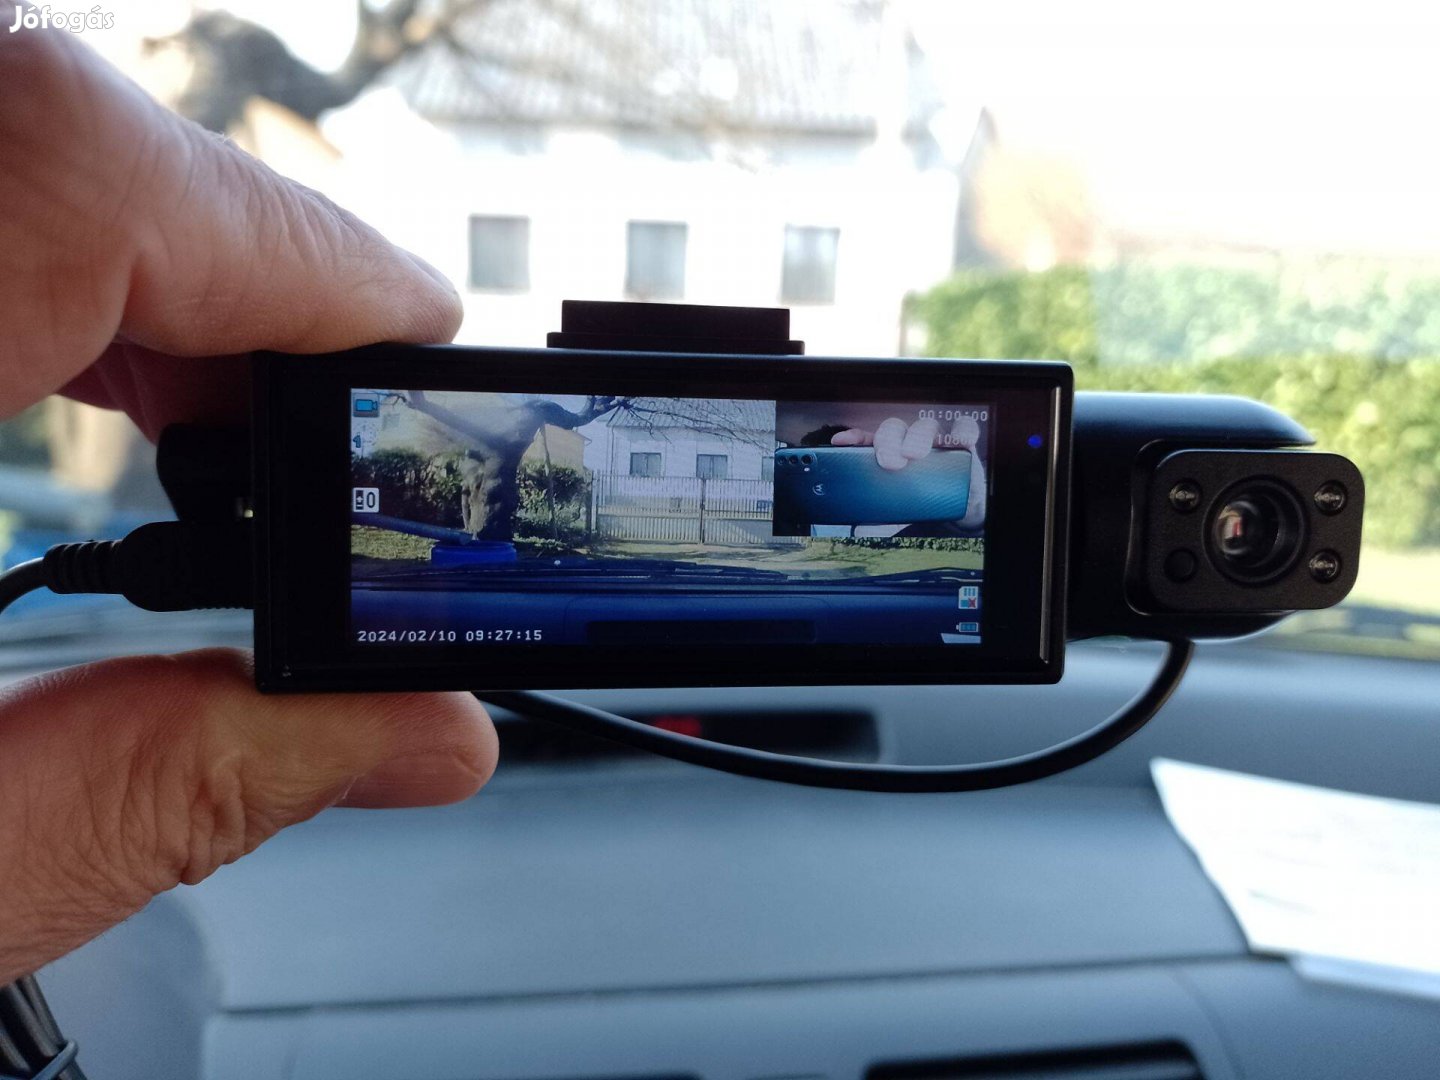 Eladó új Dash cam auto kamera dobozában Zalaegerszegen